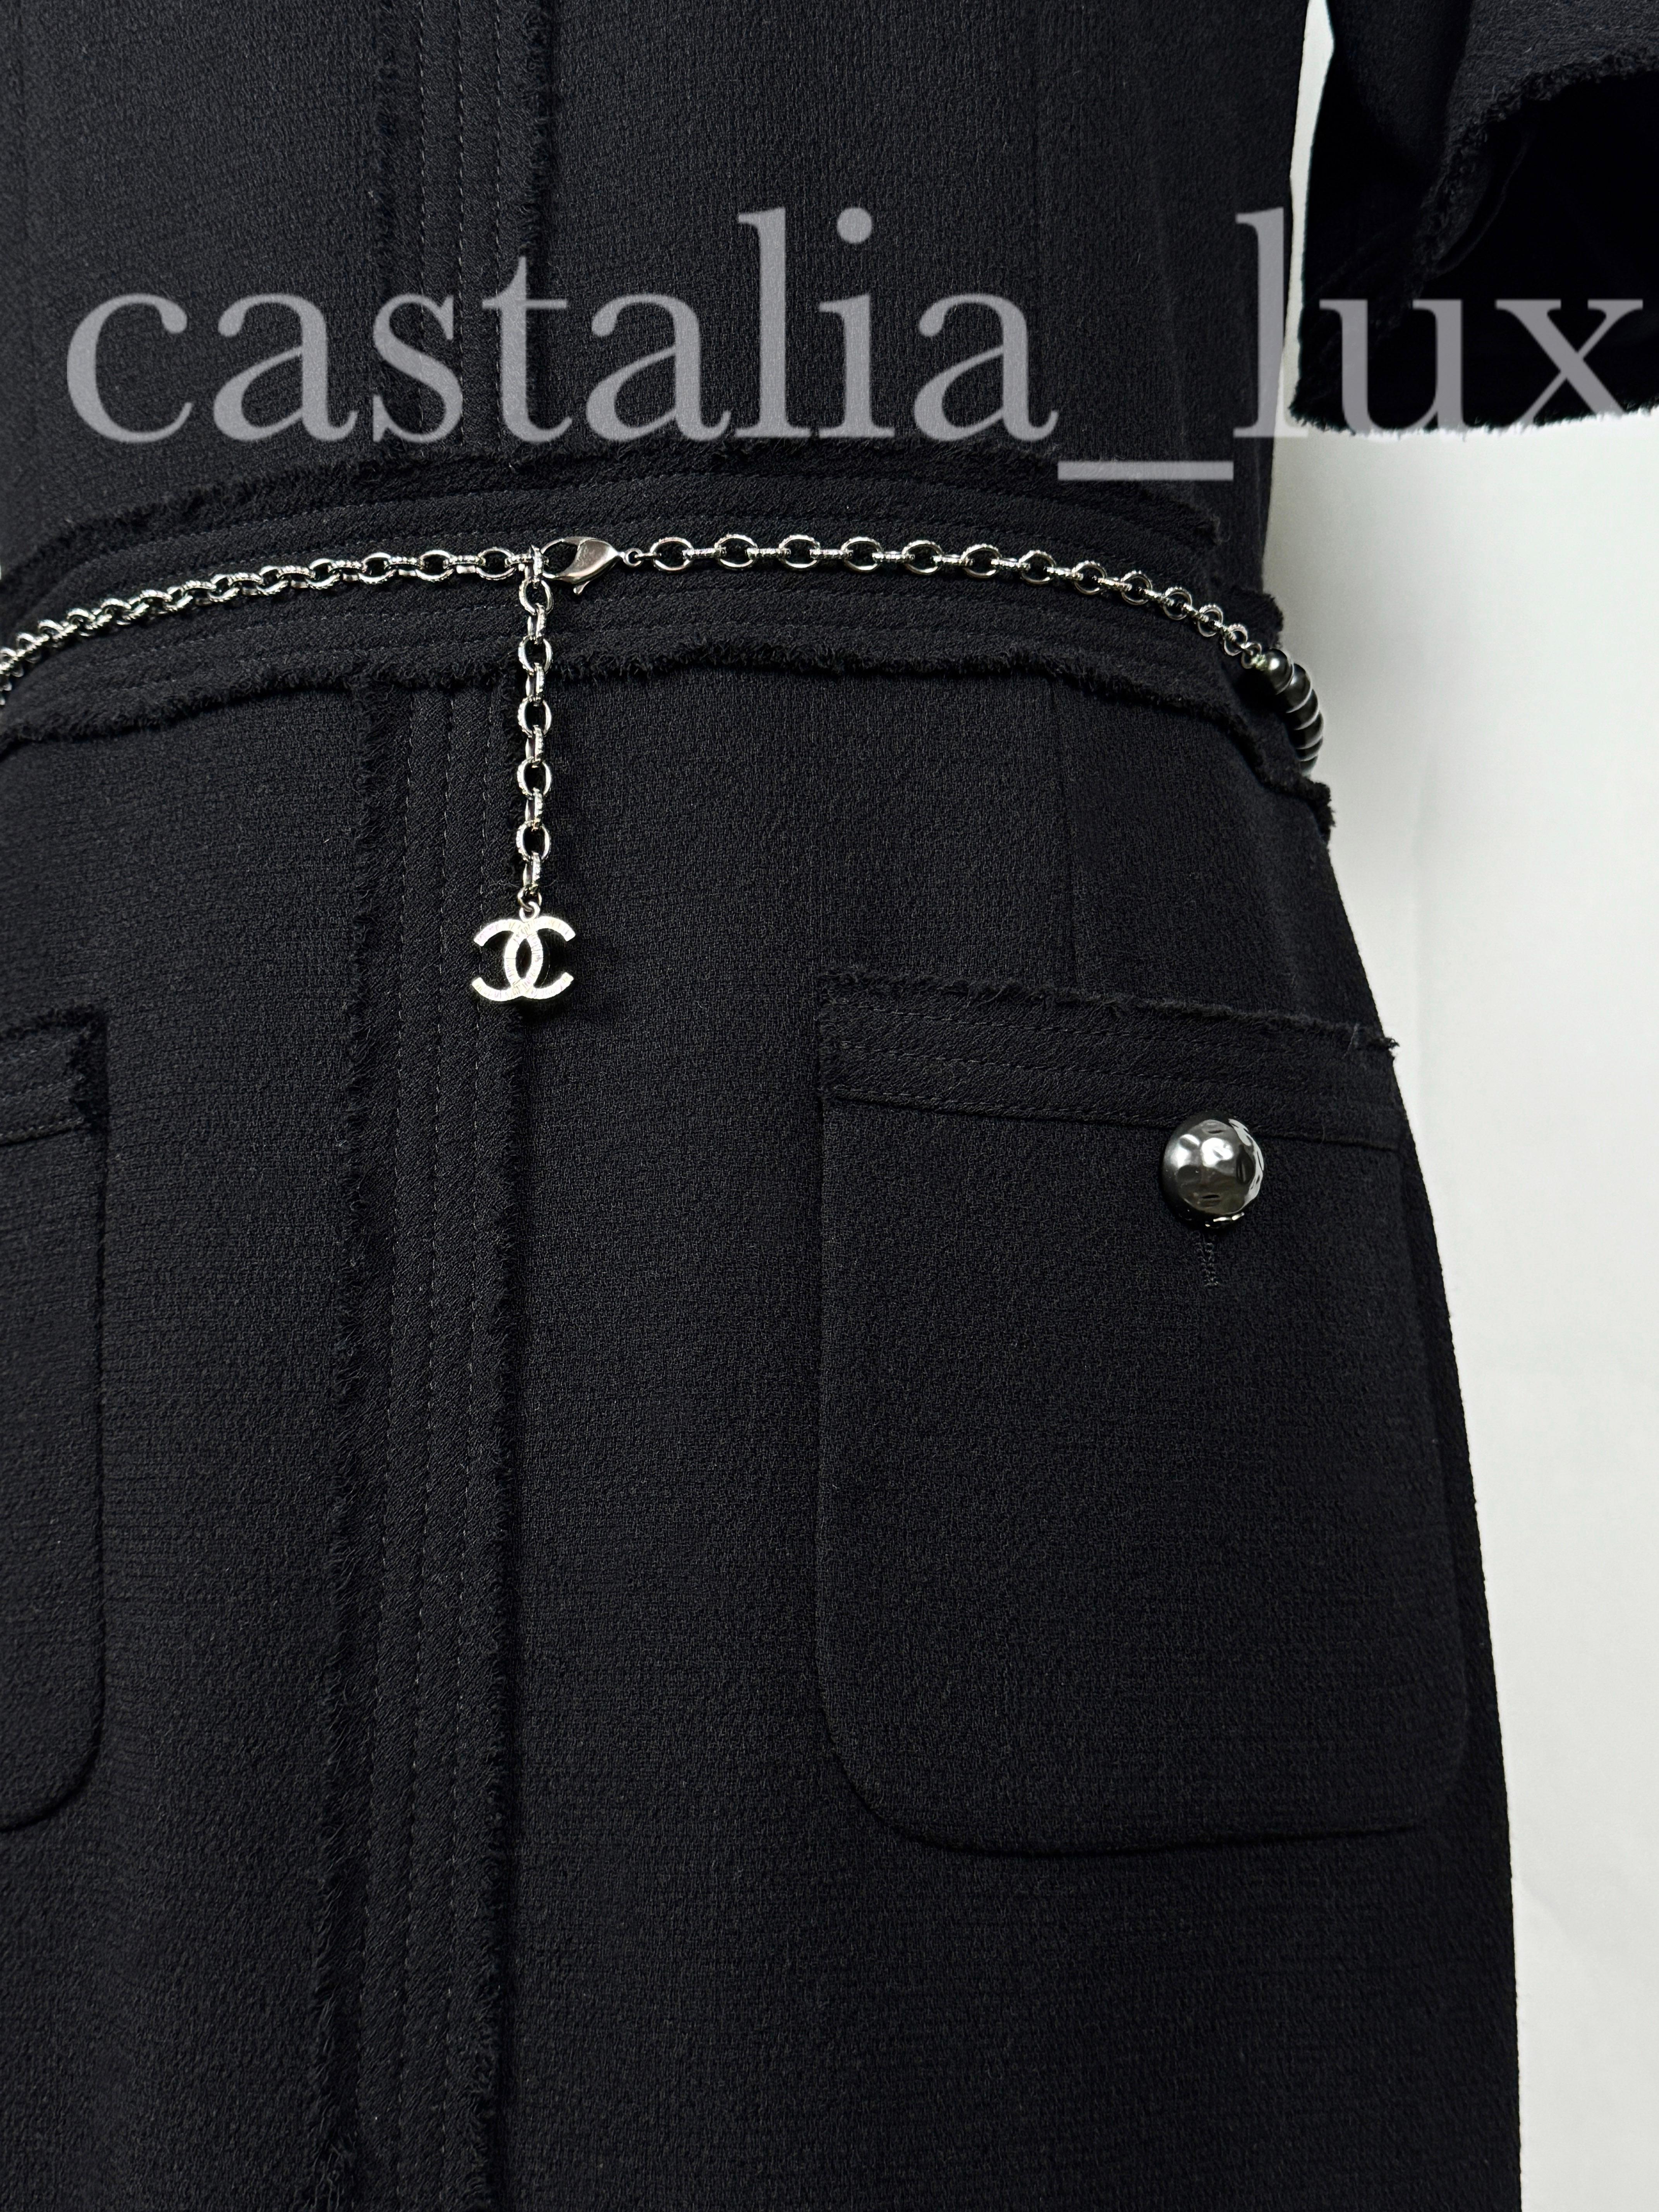 Chanel New CC Jewel Pearl Belt Black Tweed Dress For Sale 8